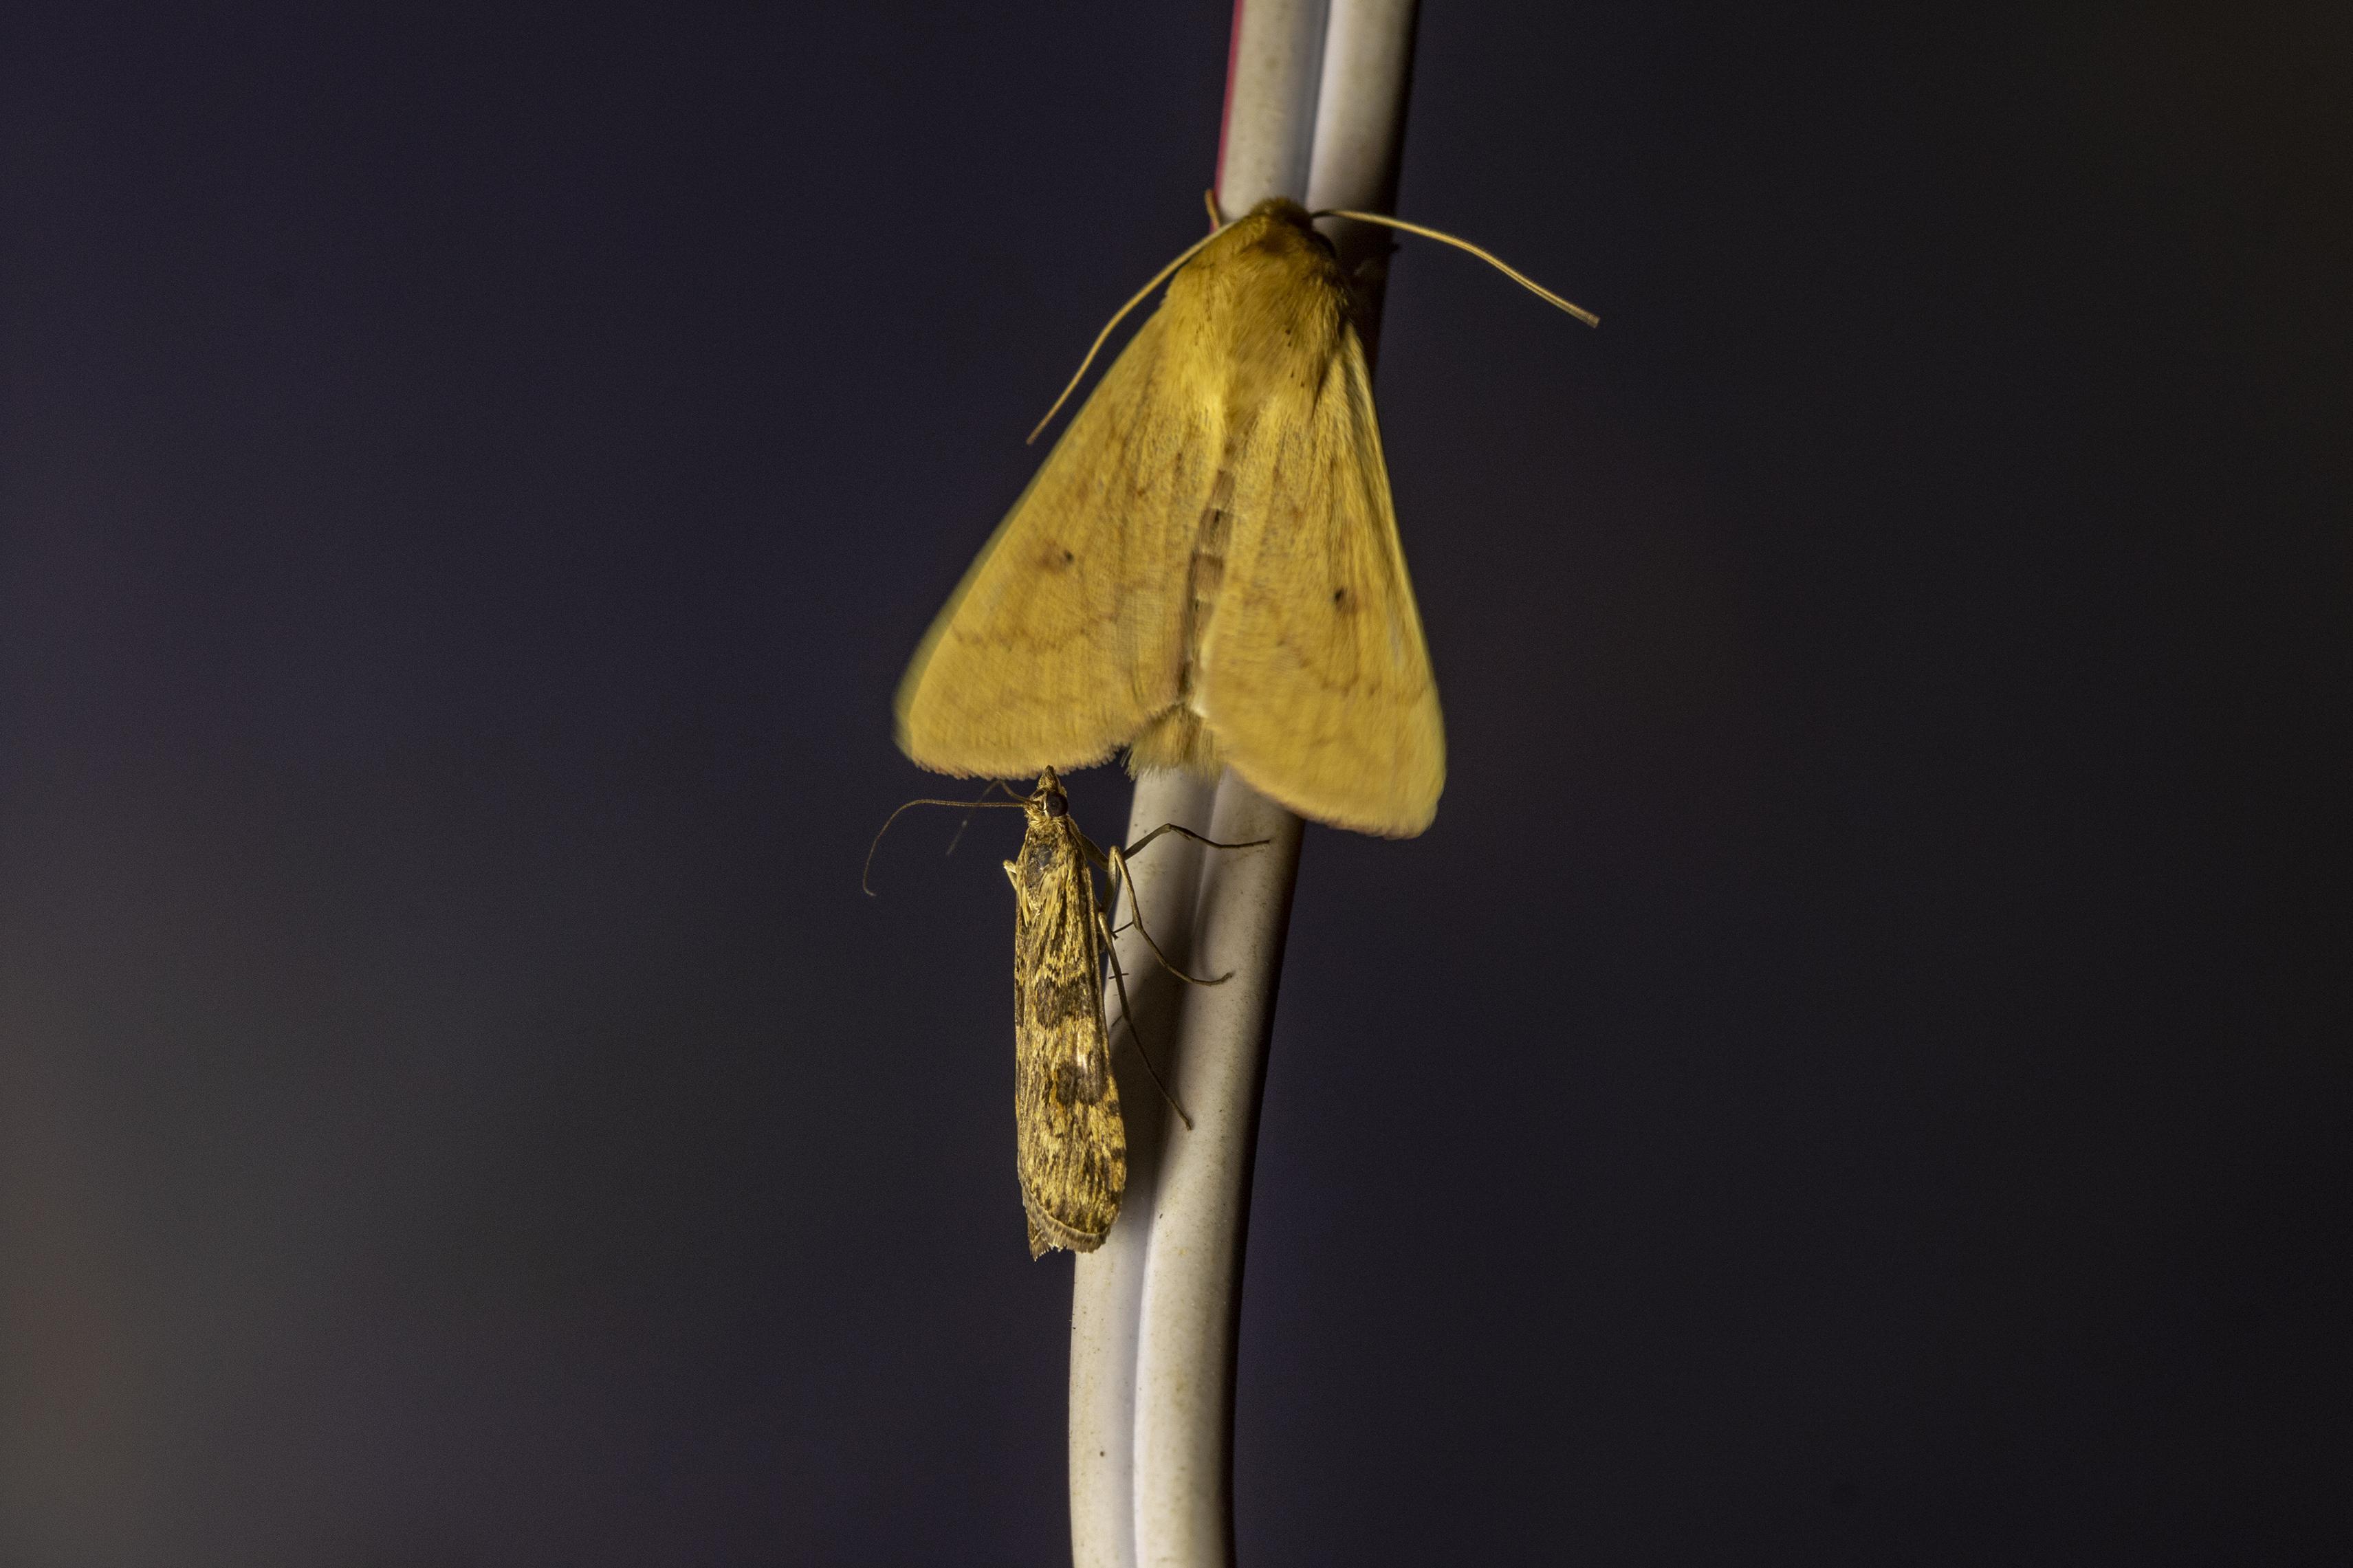 Gece kelebekleri kayıt altına alınıyor: Yüzlerce tür var